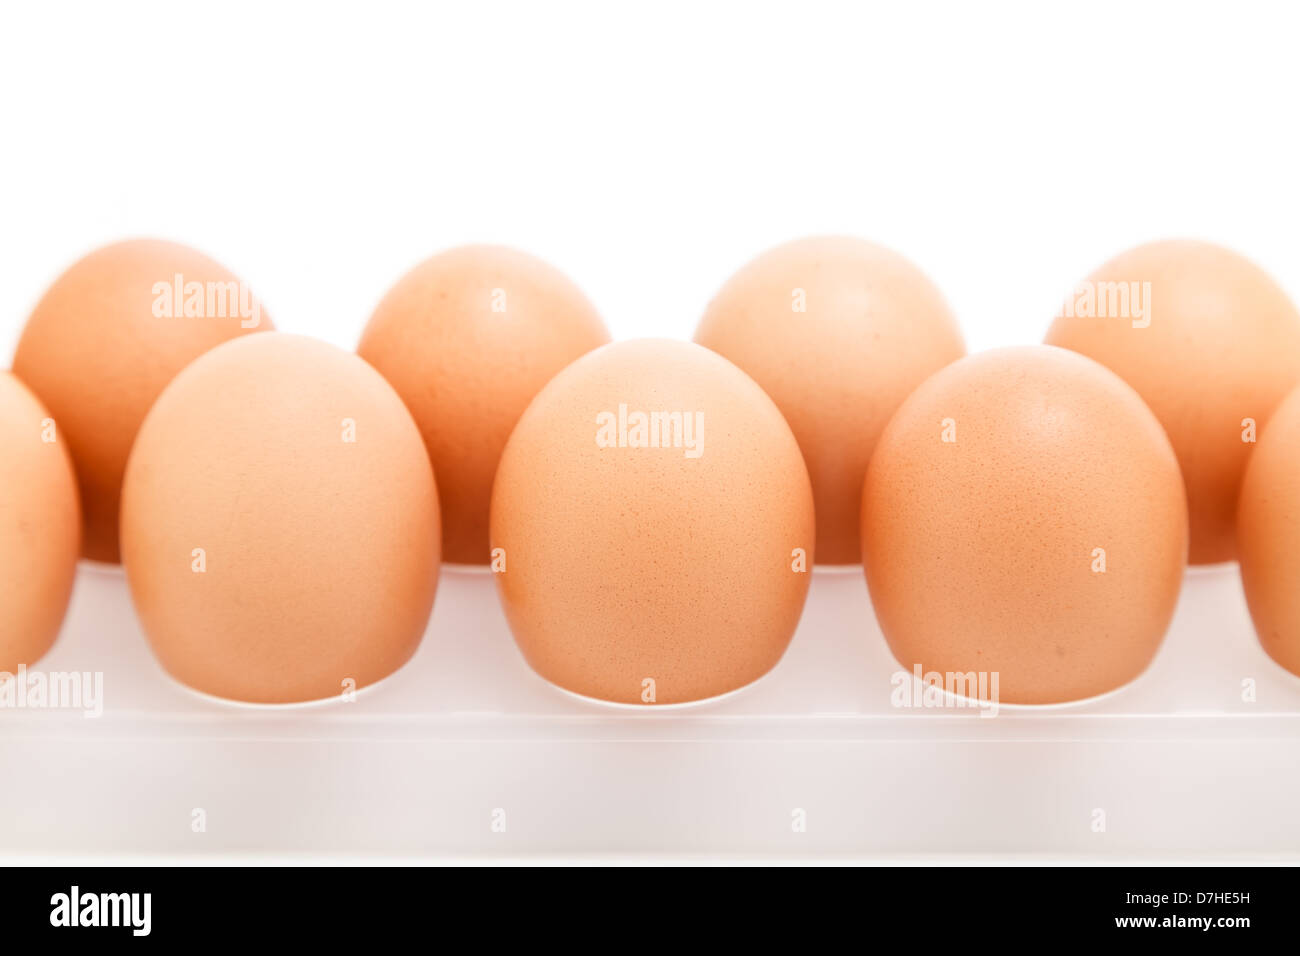 Le uova nel vassoio di plastica isolate su sfondo bianco Foto Stock